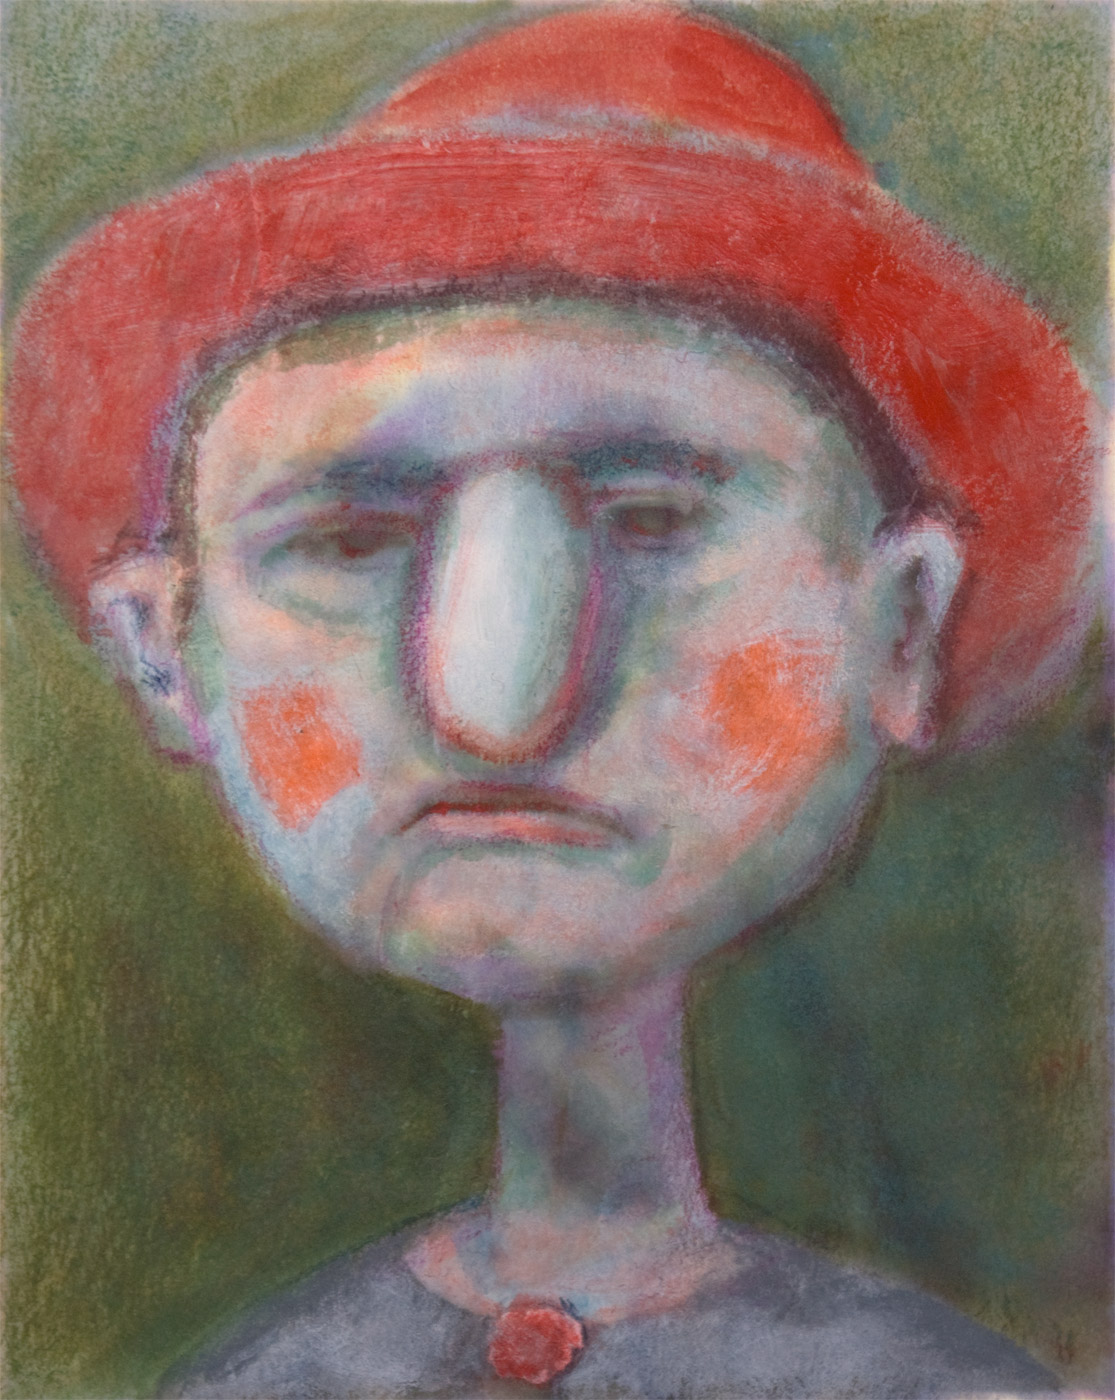 Portrait von Pinocchio 8, 14.5cm x 11.5cm, Tinte und Ölfarbe auf Papier